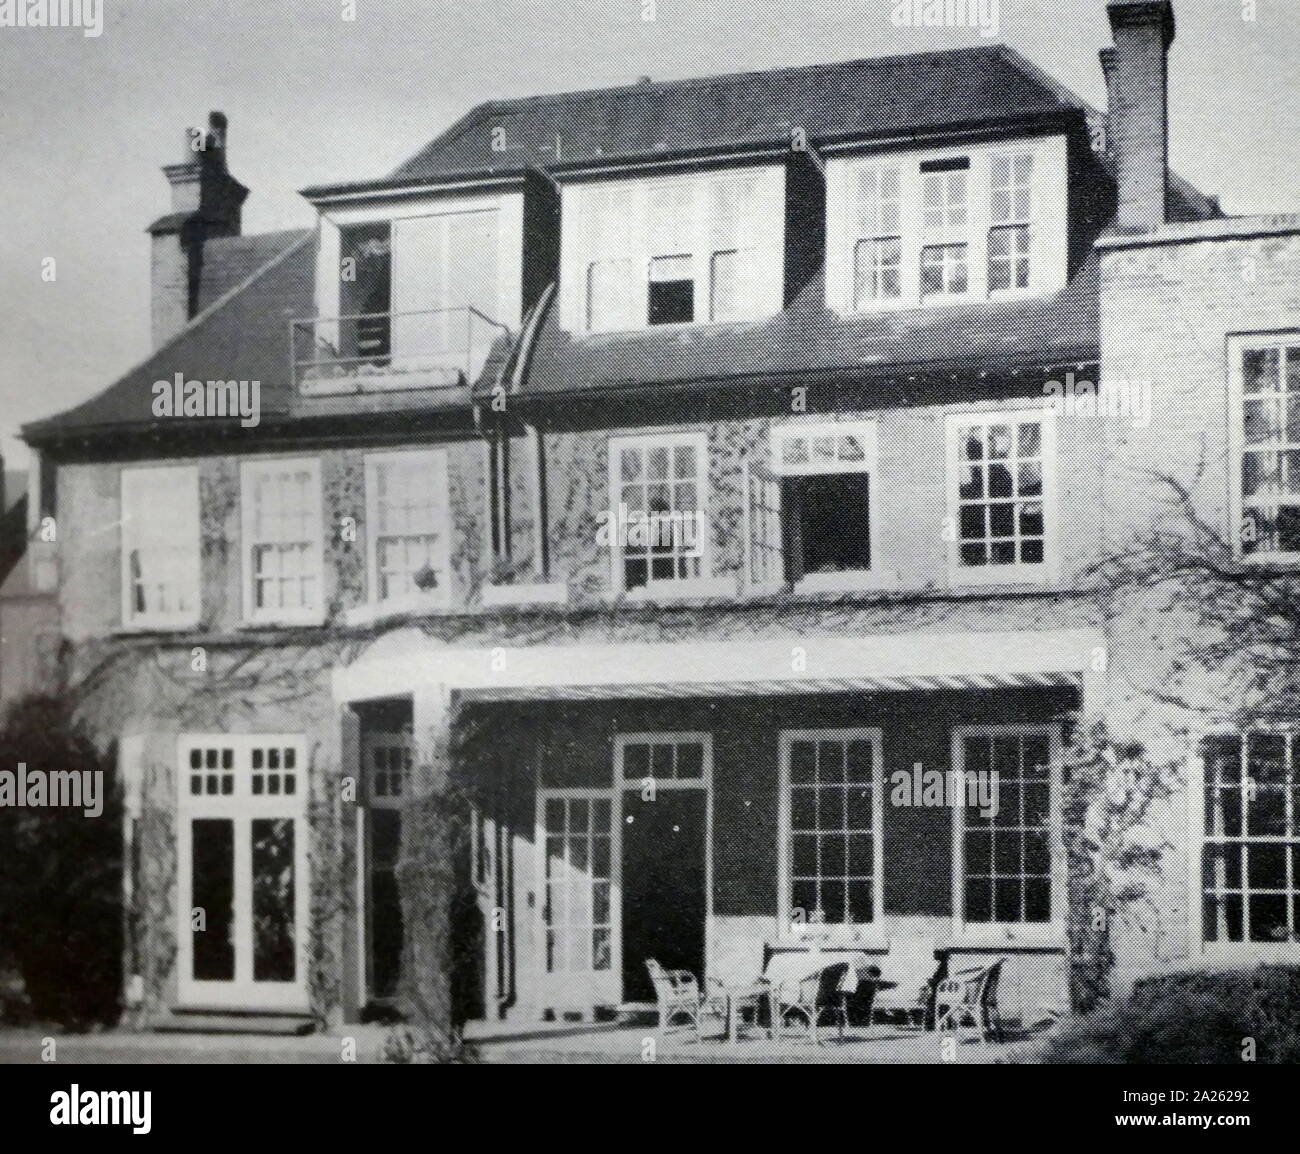 Freud l'ultima casa a Londra. Sigmund Freud, visse al 20 di Maresfield Gardens, Londra, durante l'ultimo anno della sua vita. Nel 1938, dopo la fuga Nazi annessione dell Austria Foto Stock